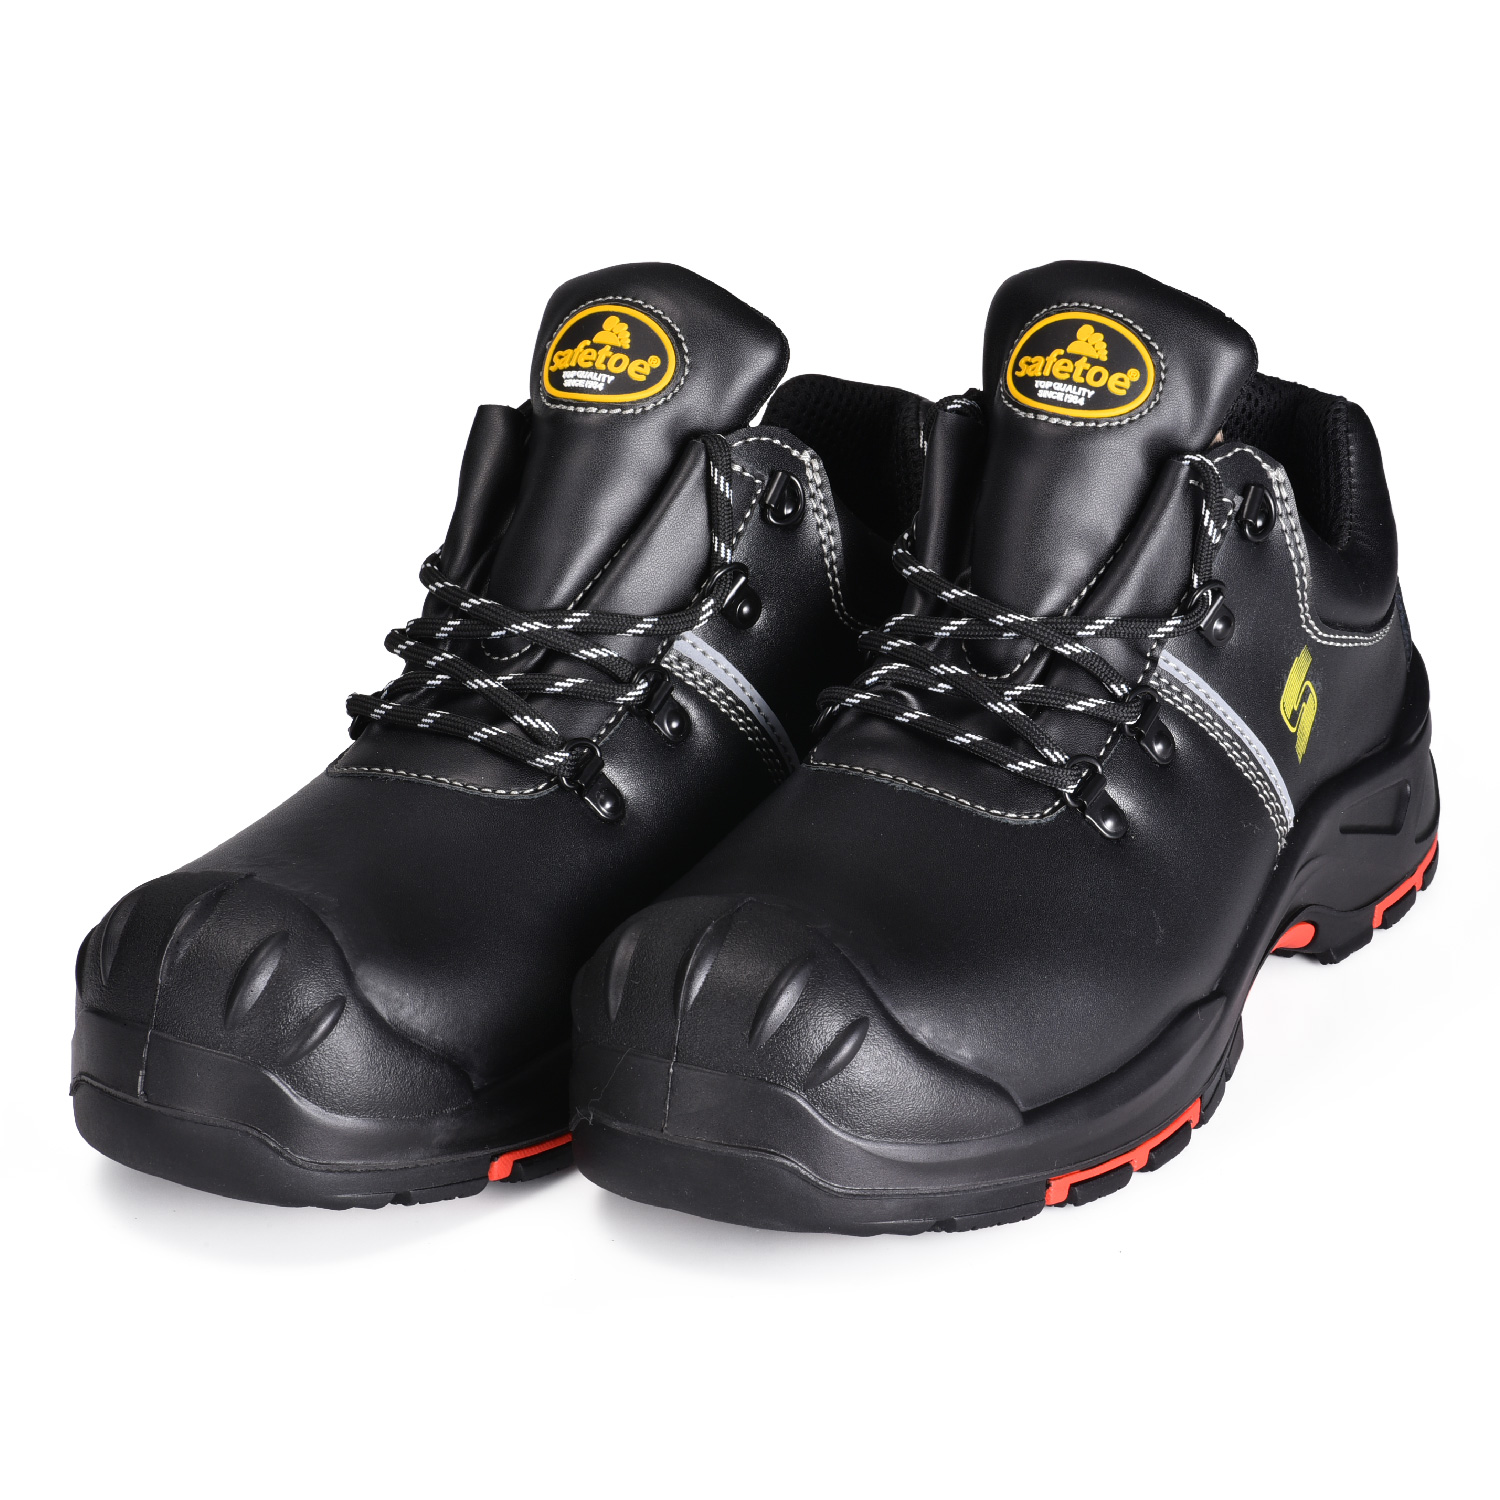 Chaussures de sécurité de haute qualité pour chaussures de sécurité Engineer S3 L-7536